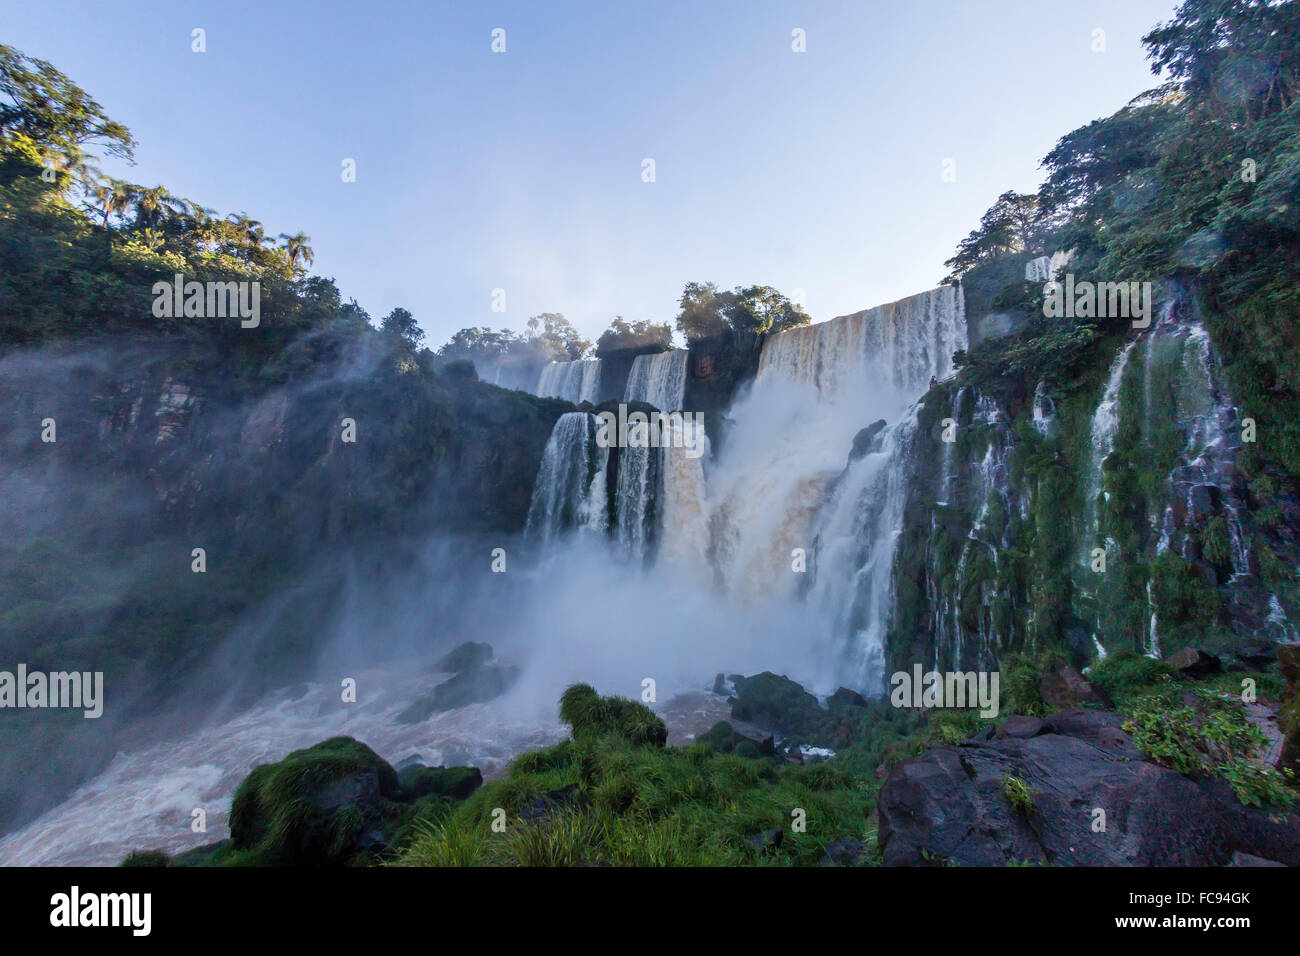 Une vue de la piste de descente, Iguazu Falls National Park, UNESCO World Heritage Site, Misiones, Argentine, Amérique du Sud Banque D'Images